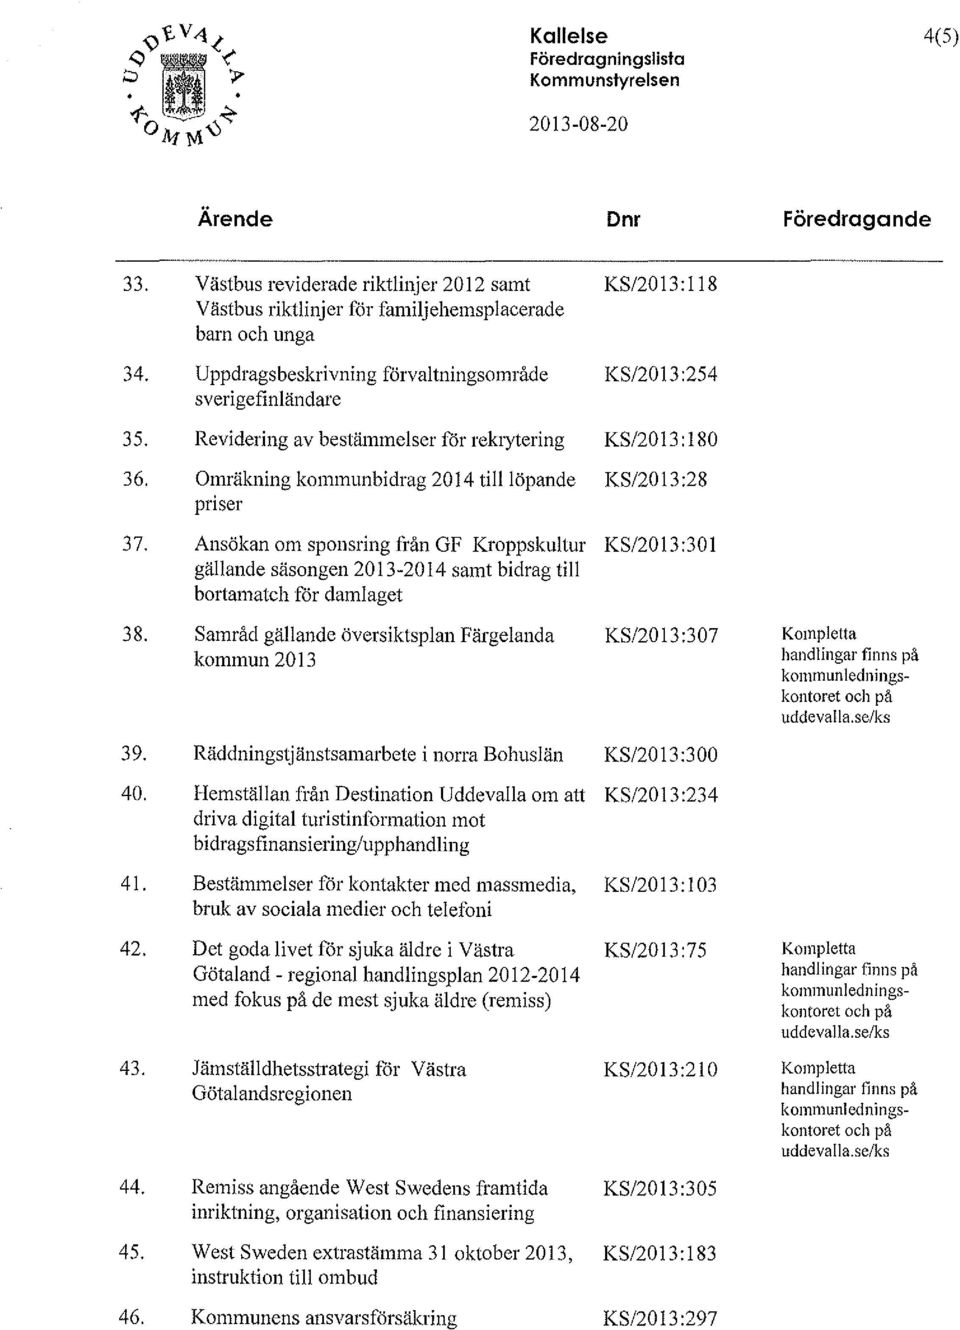 ivning förvaltningsområde sverigefinländare Revidering av bestämmelser för rekrytering Omräkning kommunbidrag 2014 tilllöpande priser KS/2013:254 KS/2013:180 KS/2013:28 37. 38. 39. 40.